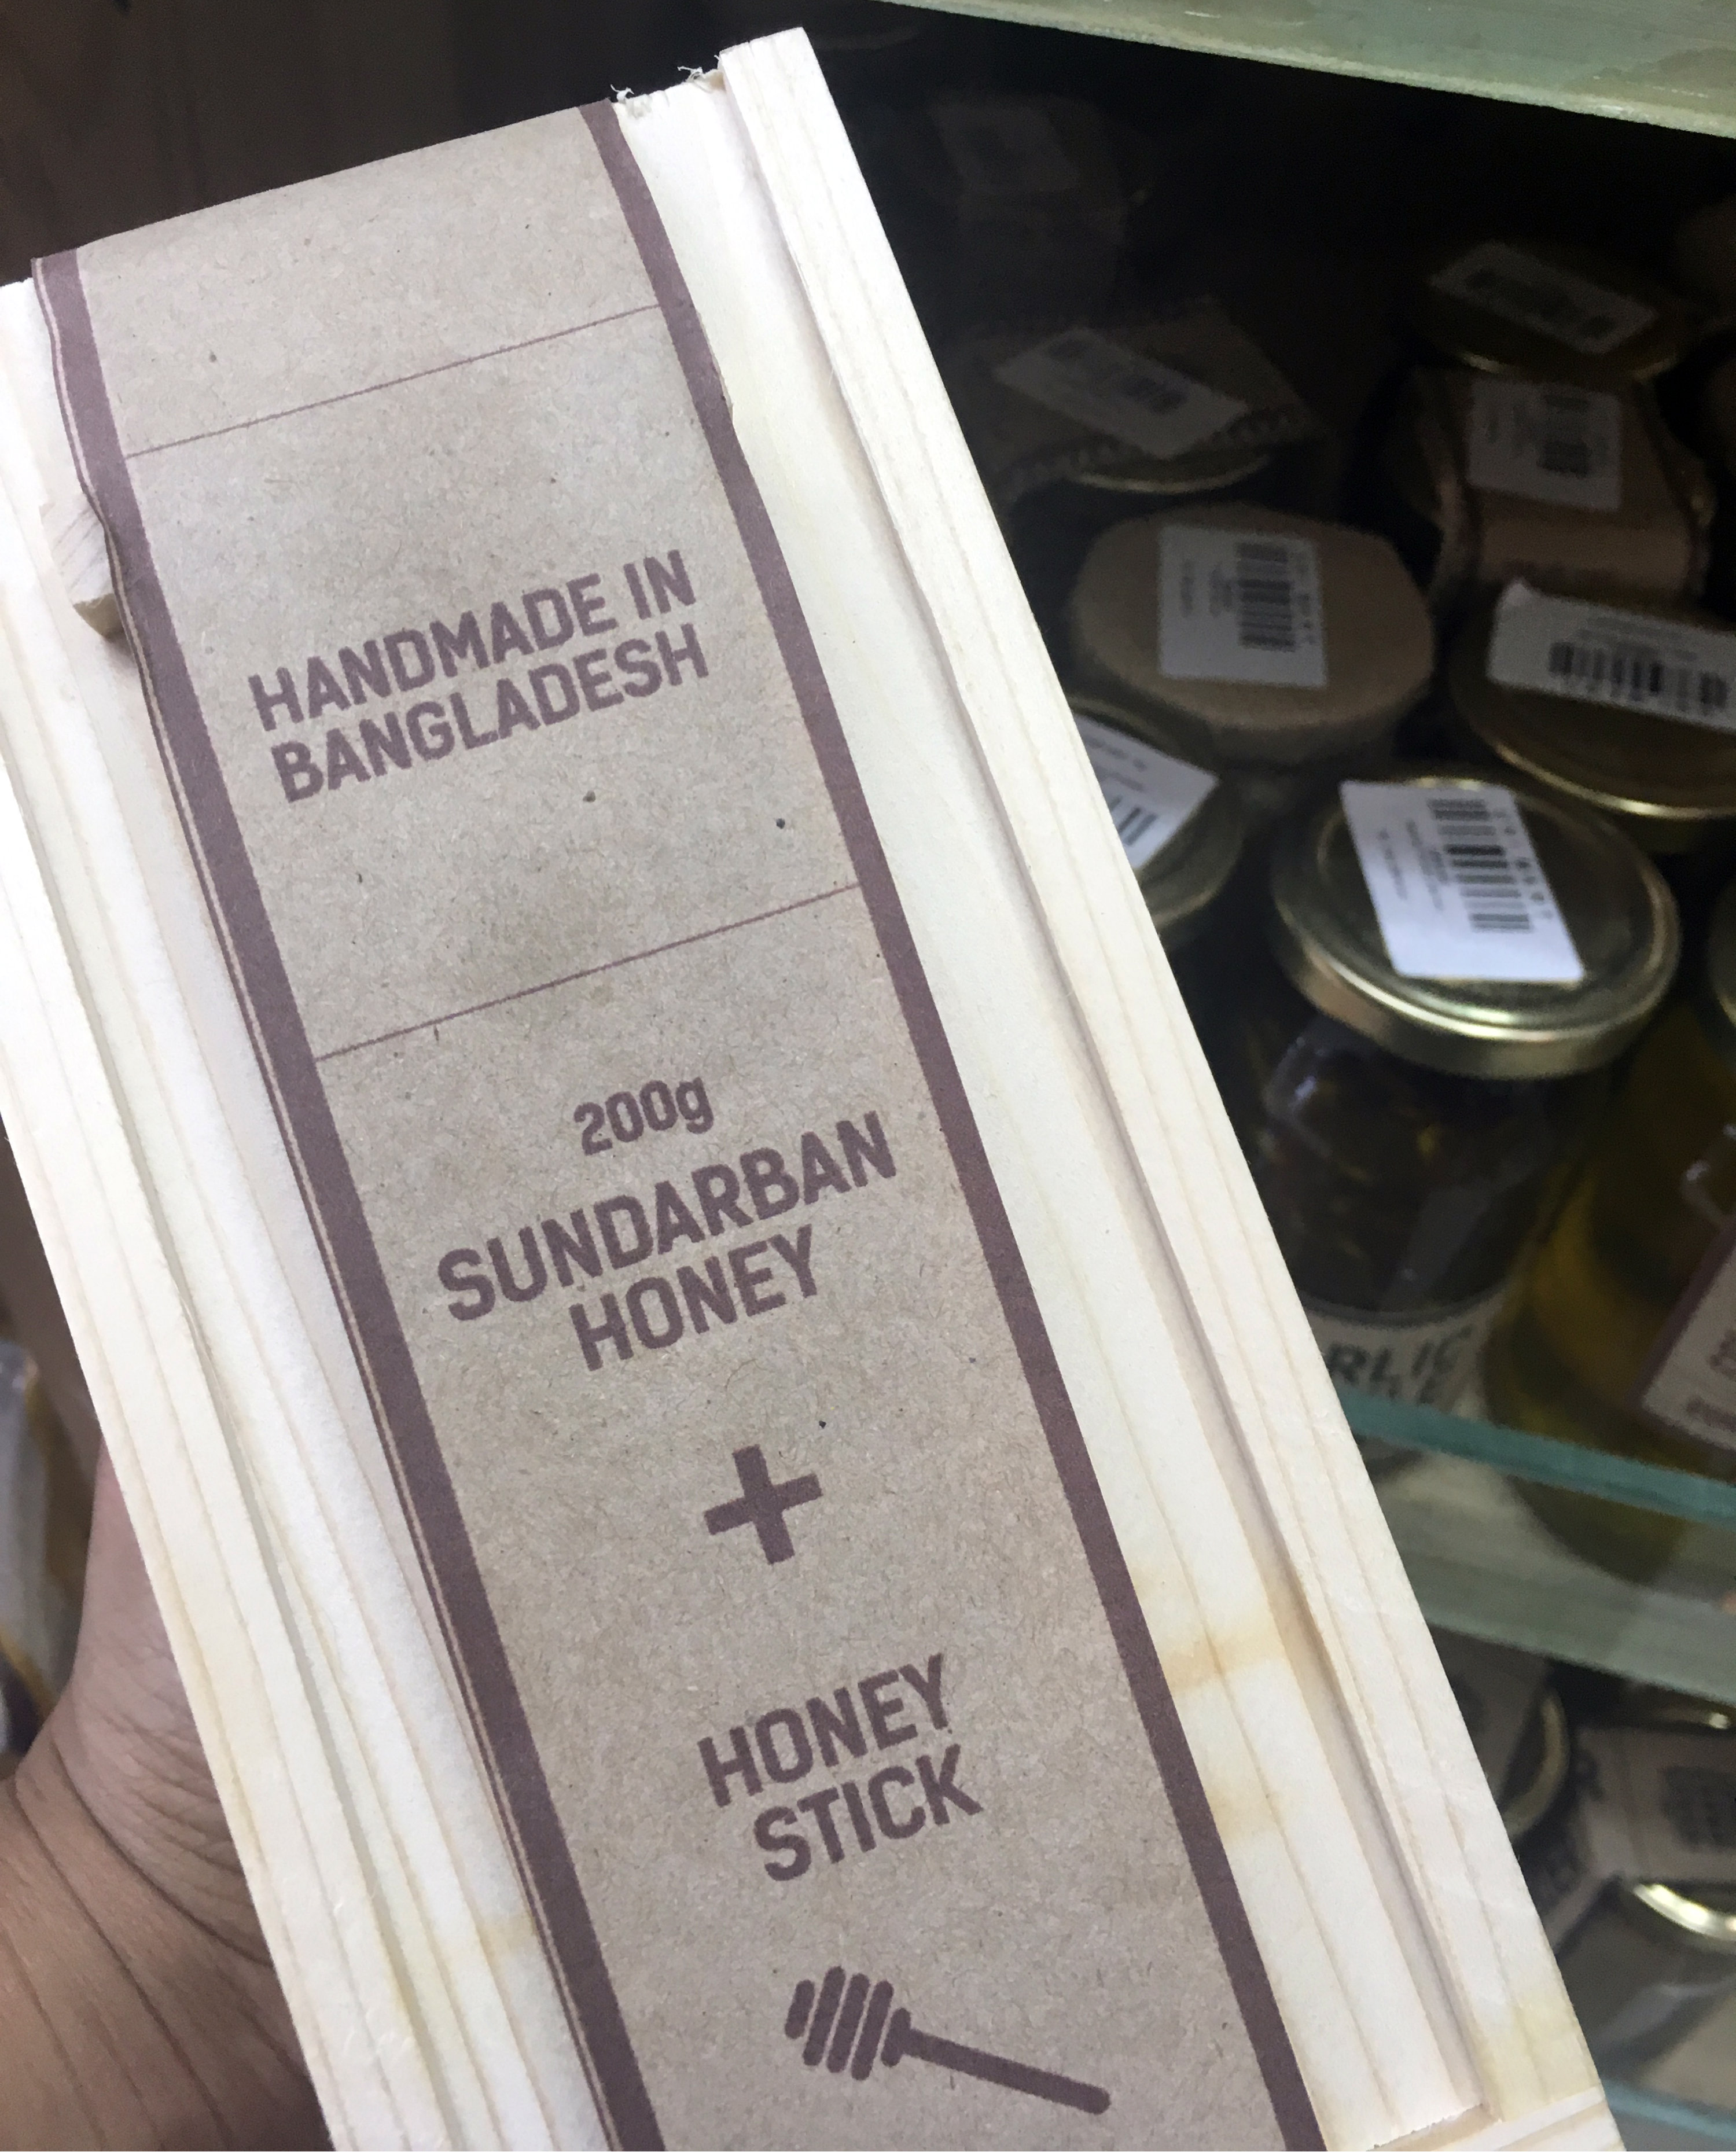 Sunderban's honey gift box